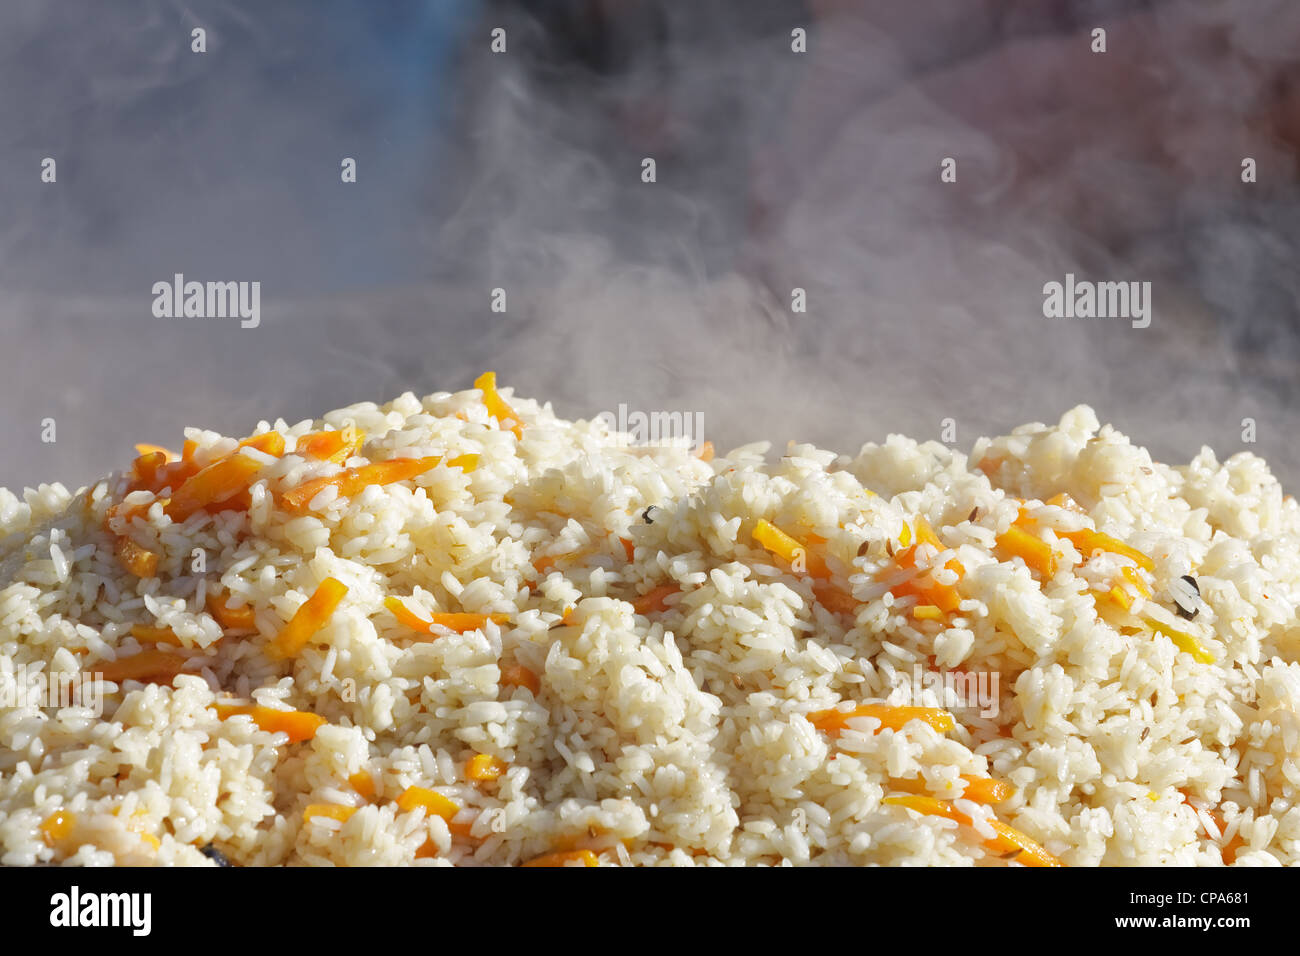 https://c8.alamy.com/compes/cpa681/arroz-caliente-recien-preparado-close-up-cpa681.jpg